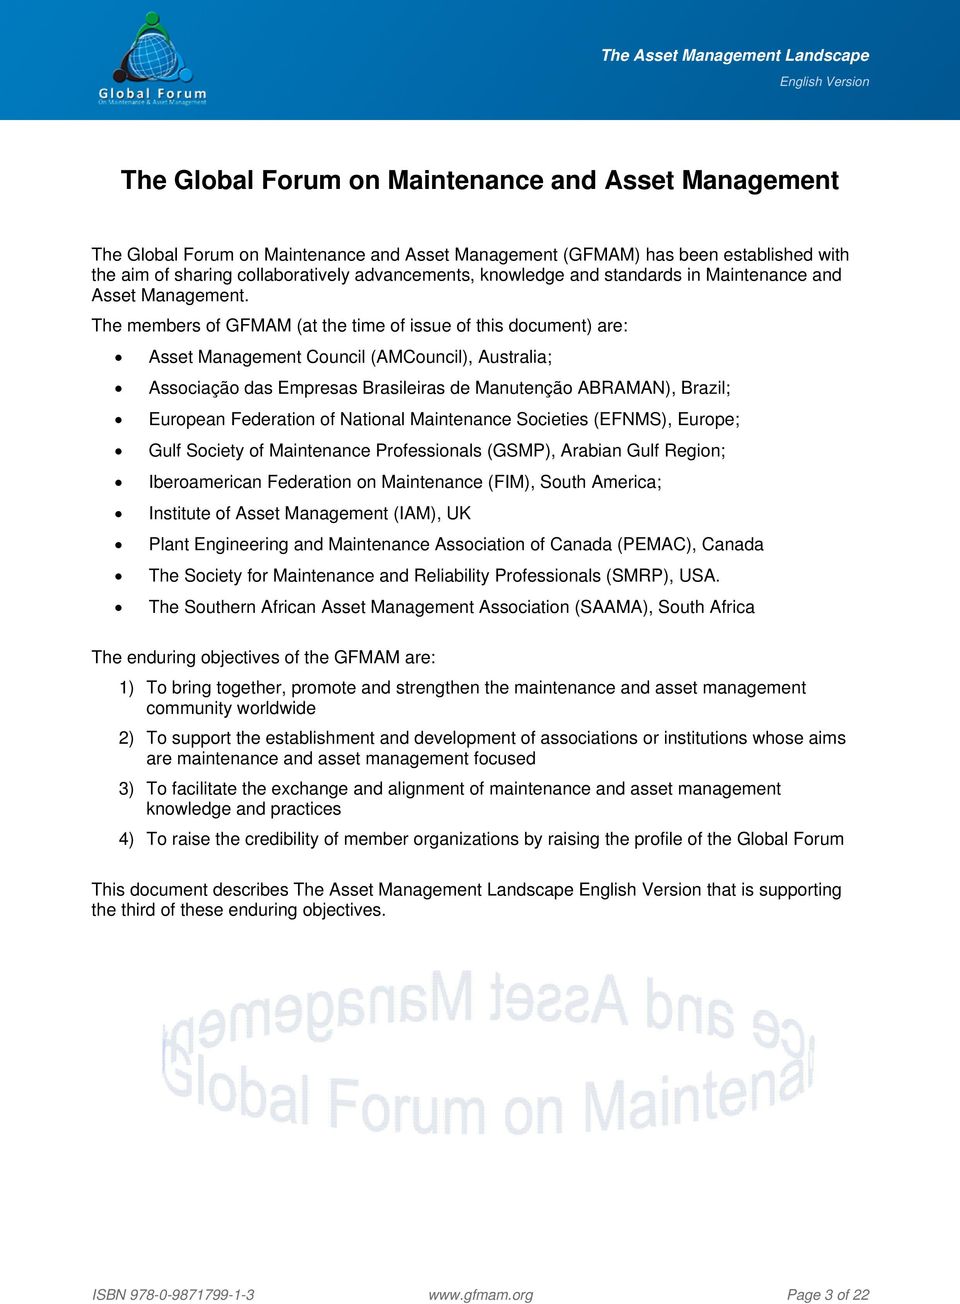 The members of GFMAM (at the time of issue of this document) are: Asset Management Council (AMCouncil), Australia; Associação das Empresas Brasileiras de Manutenção ABRAMAN), Brazil; European